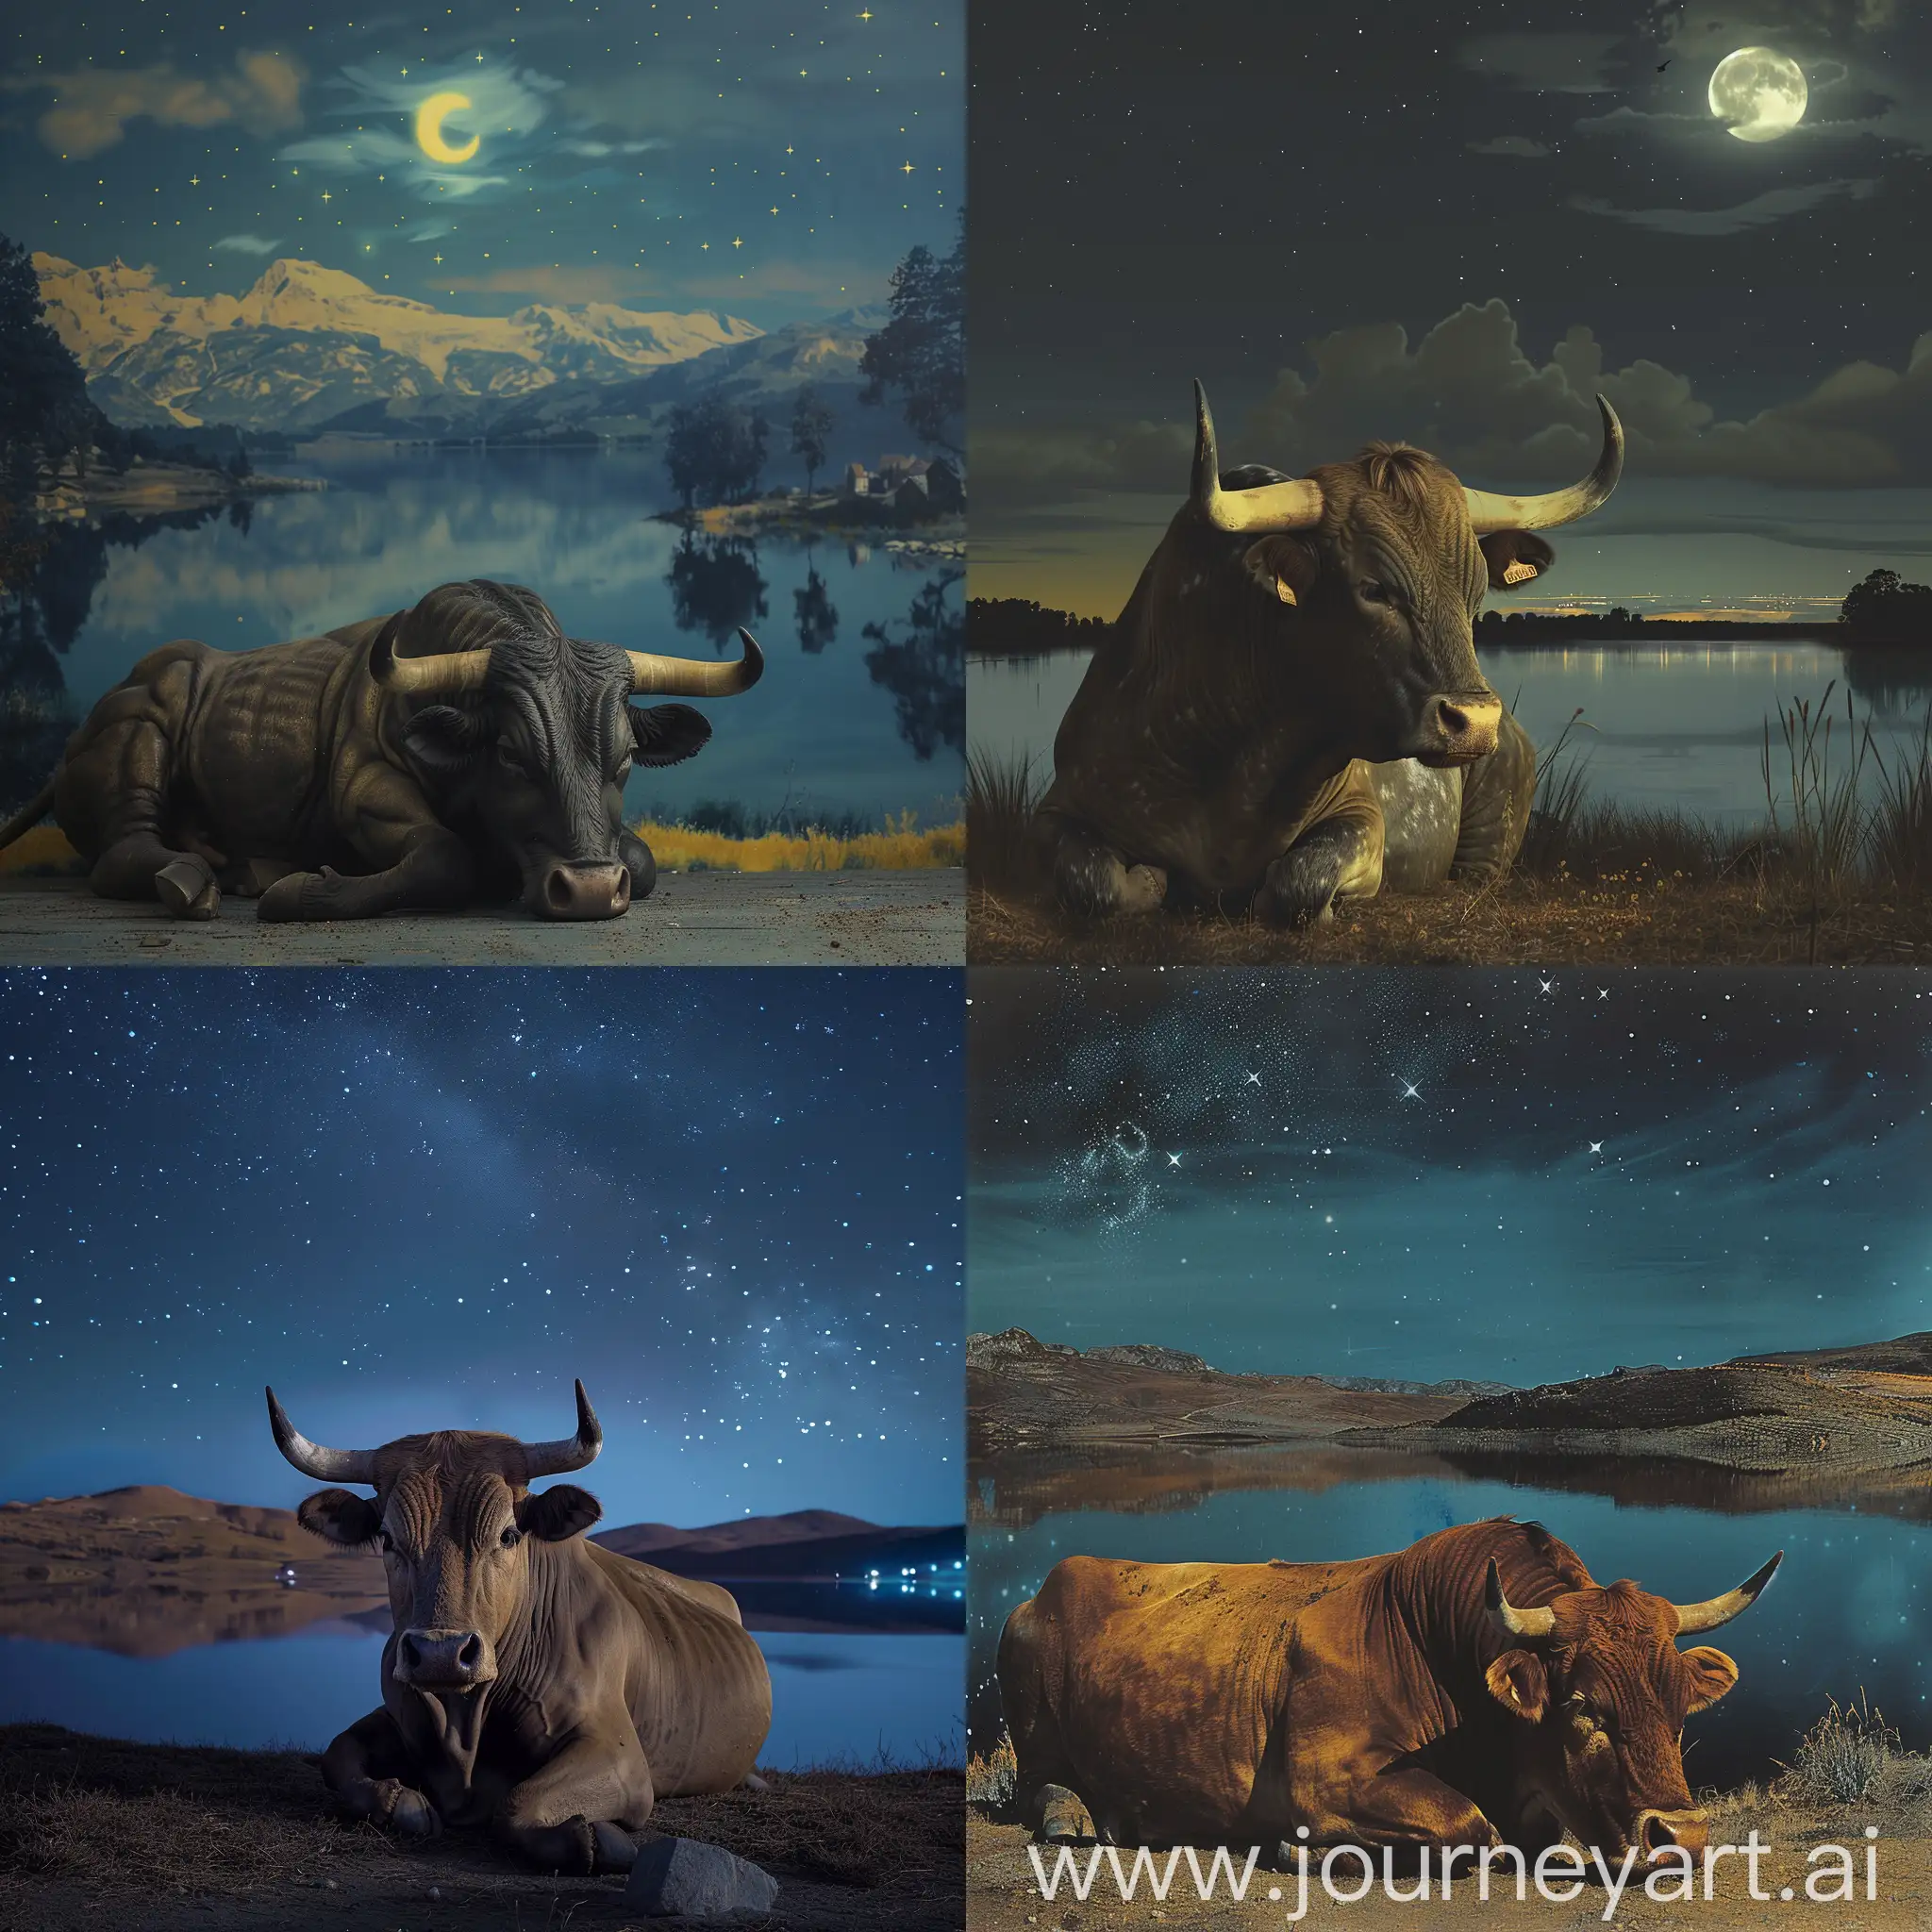 toro descansando frente a un lago de paisaje nocturno